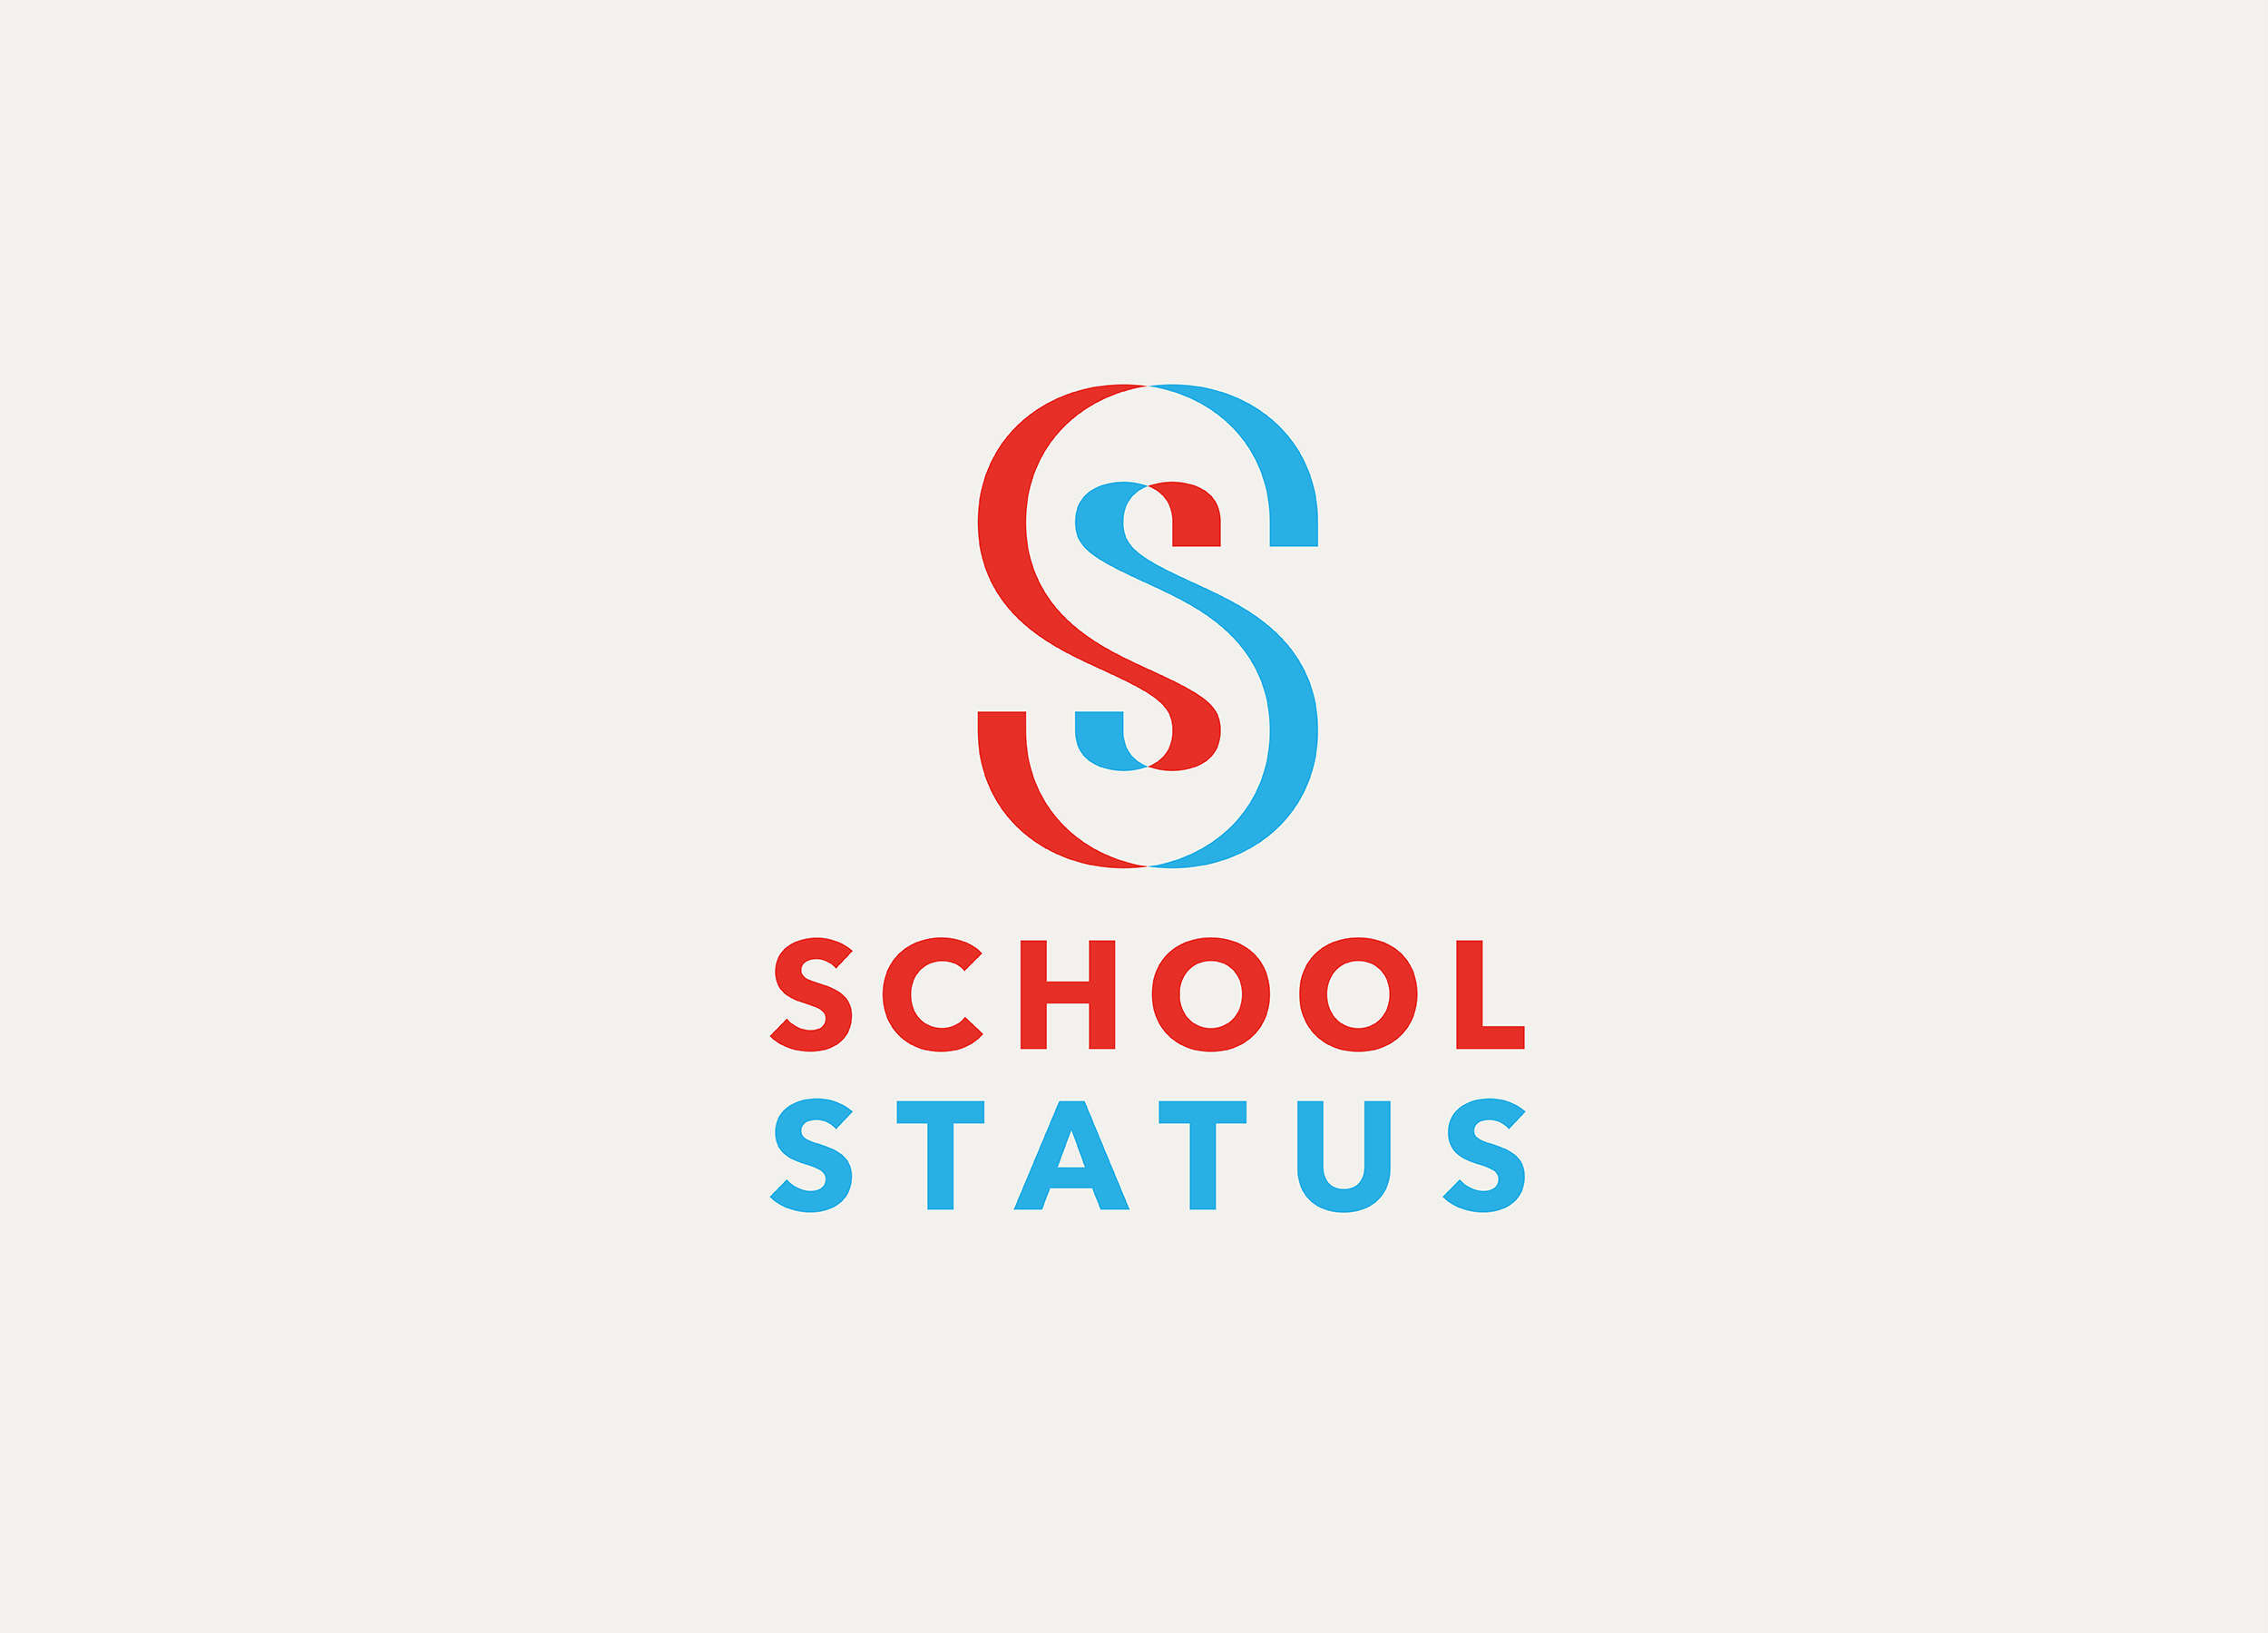 Logo für die Schulleistungs‐Anlayse Software Schoolstatus der Blue Consulting Group, USA.